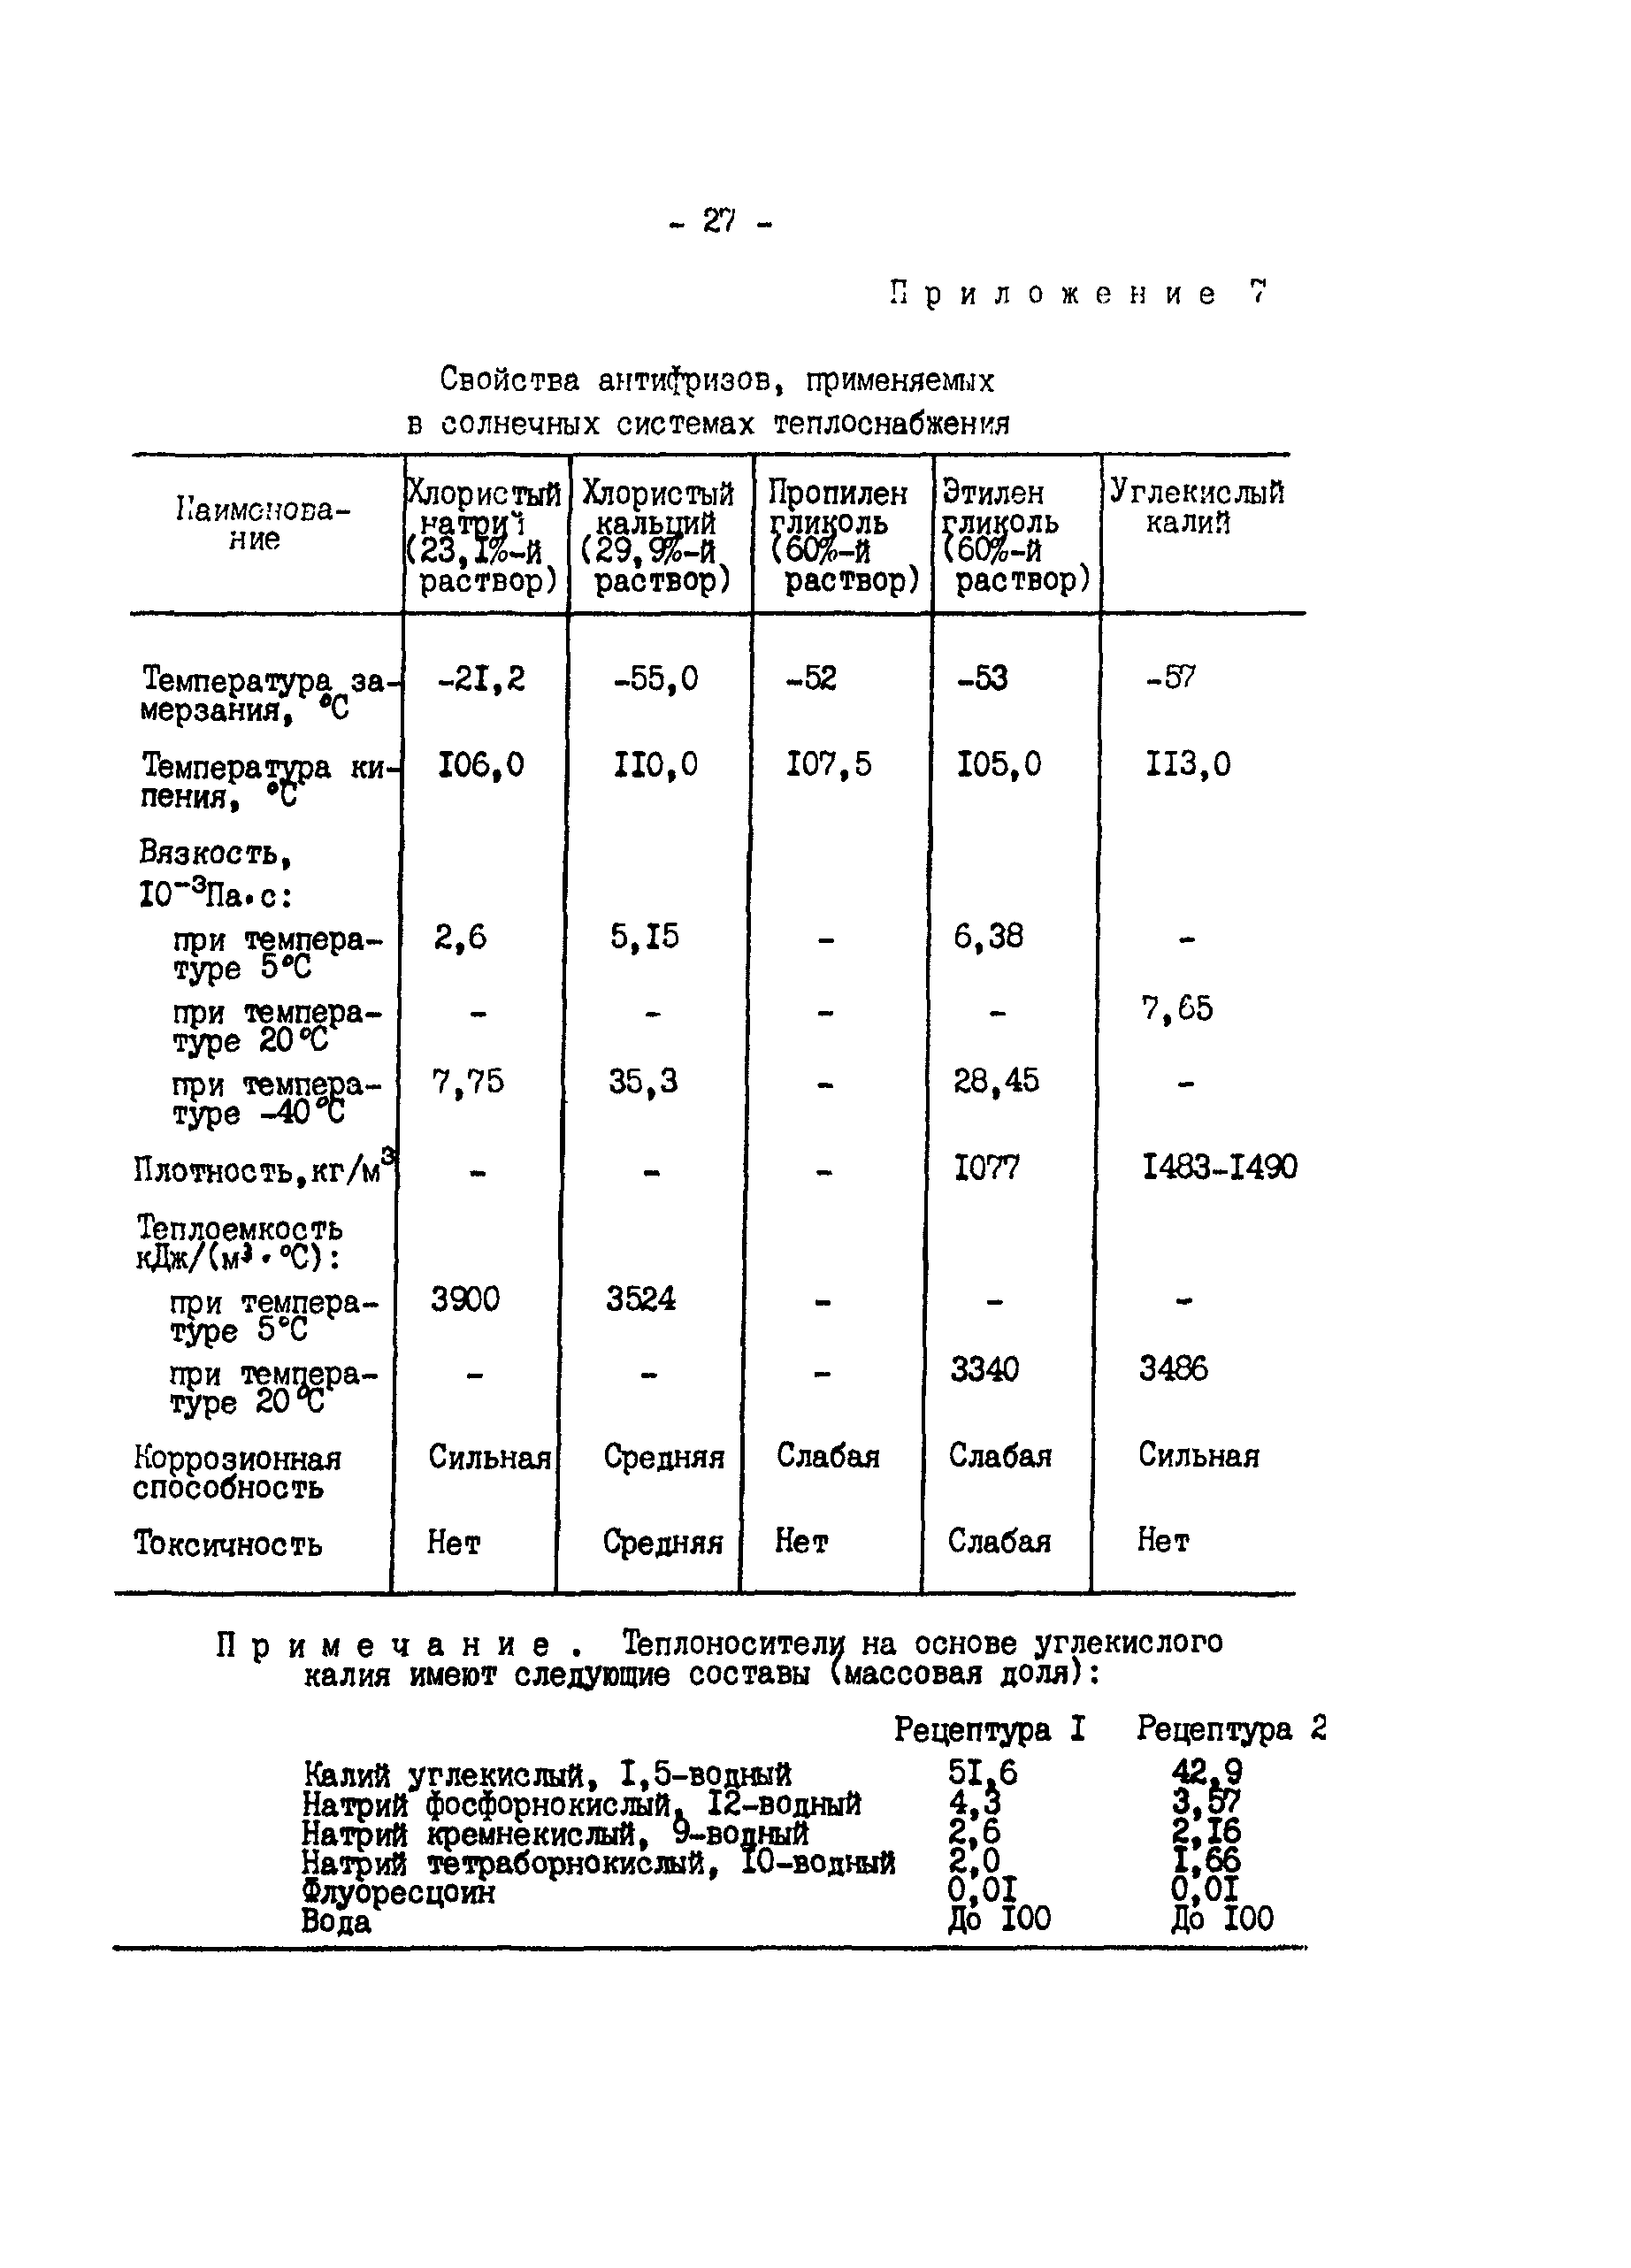 РД 34.20.115-89